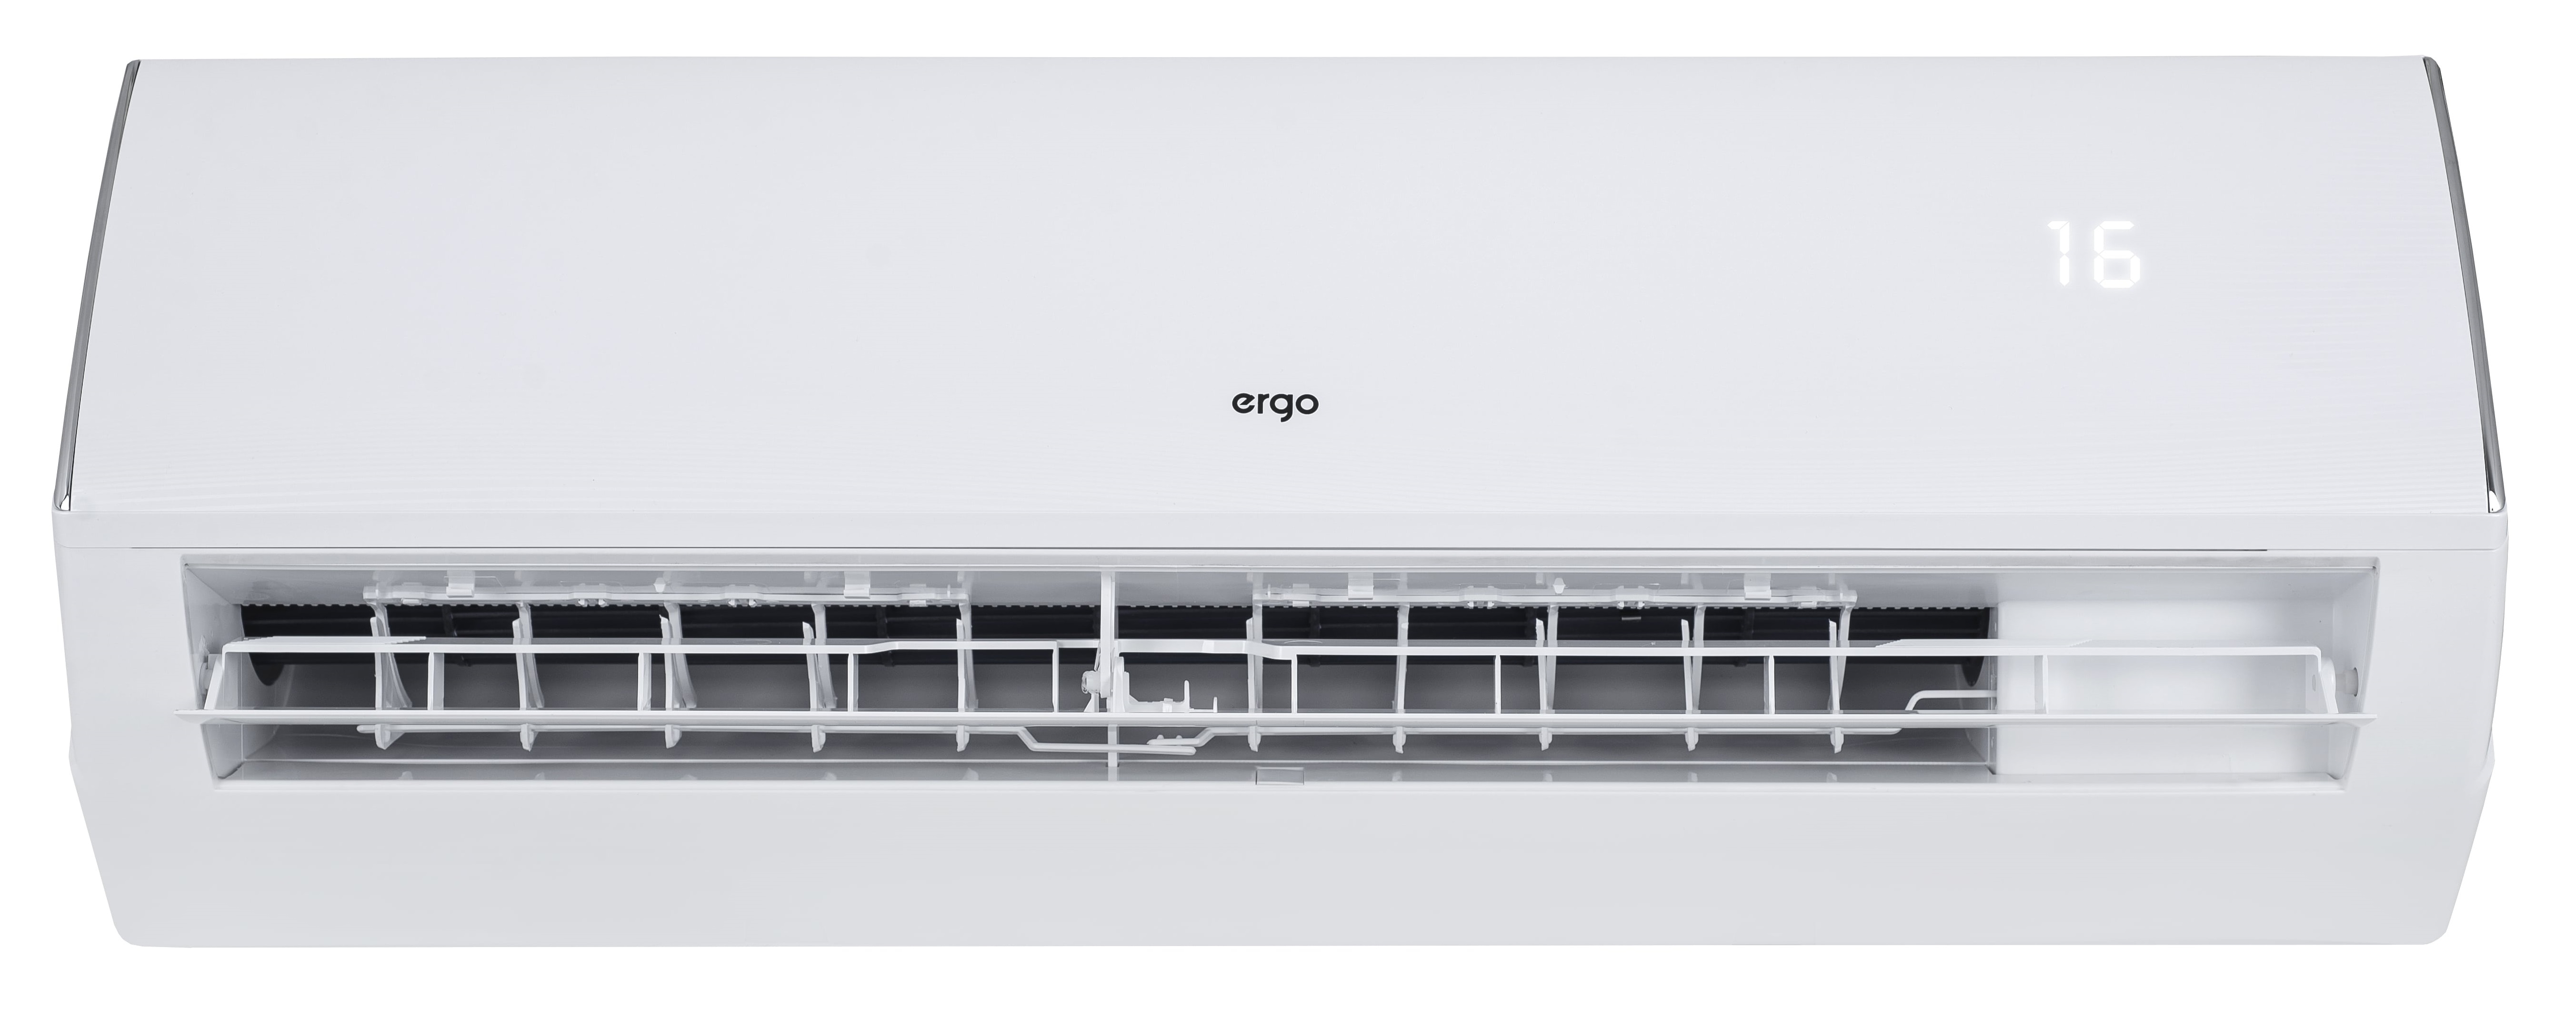 Кондиционер сплит-система Ergo ACI 1811 CH отзывы - изображения 5